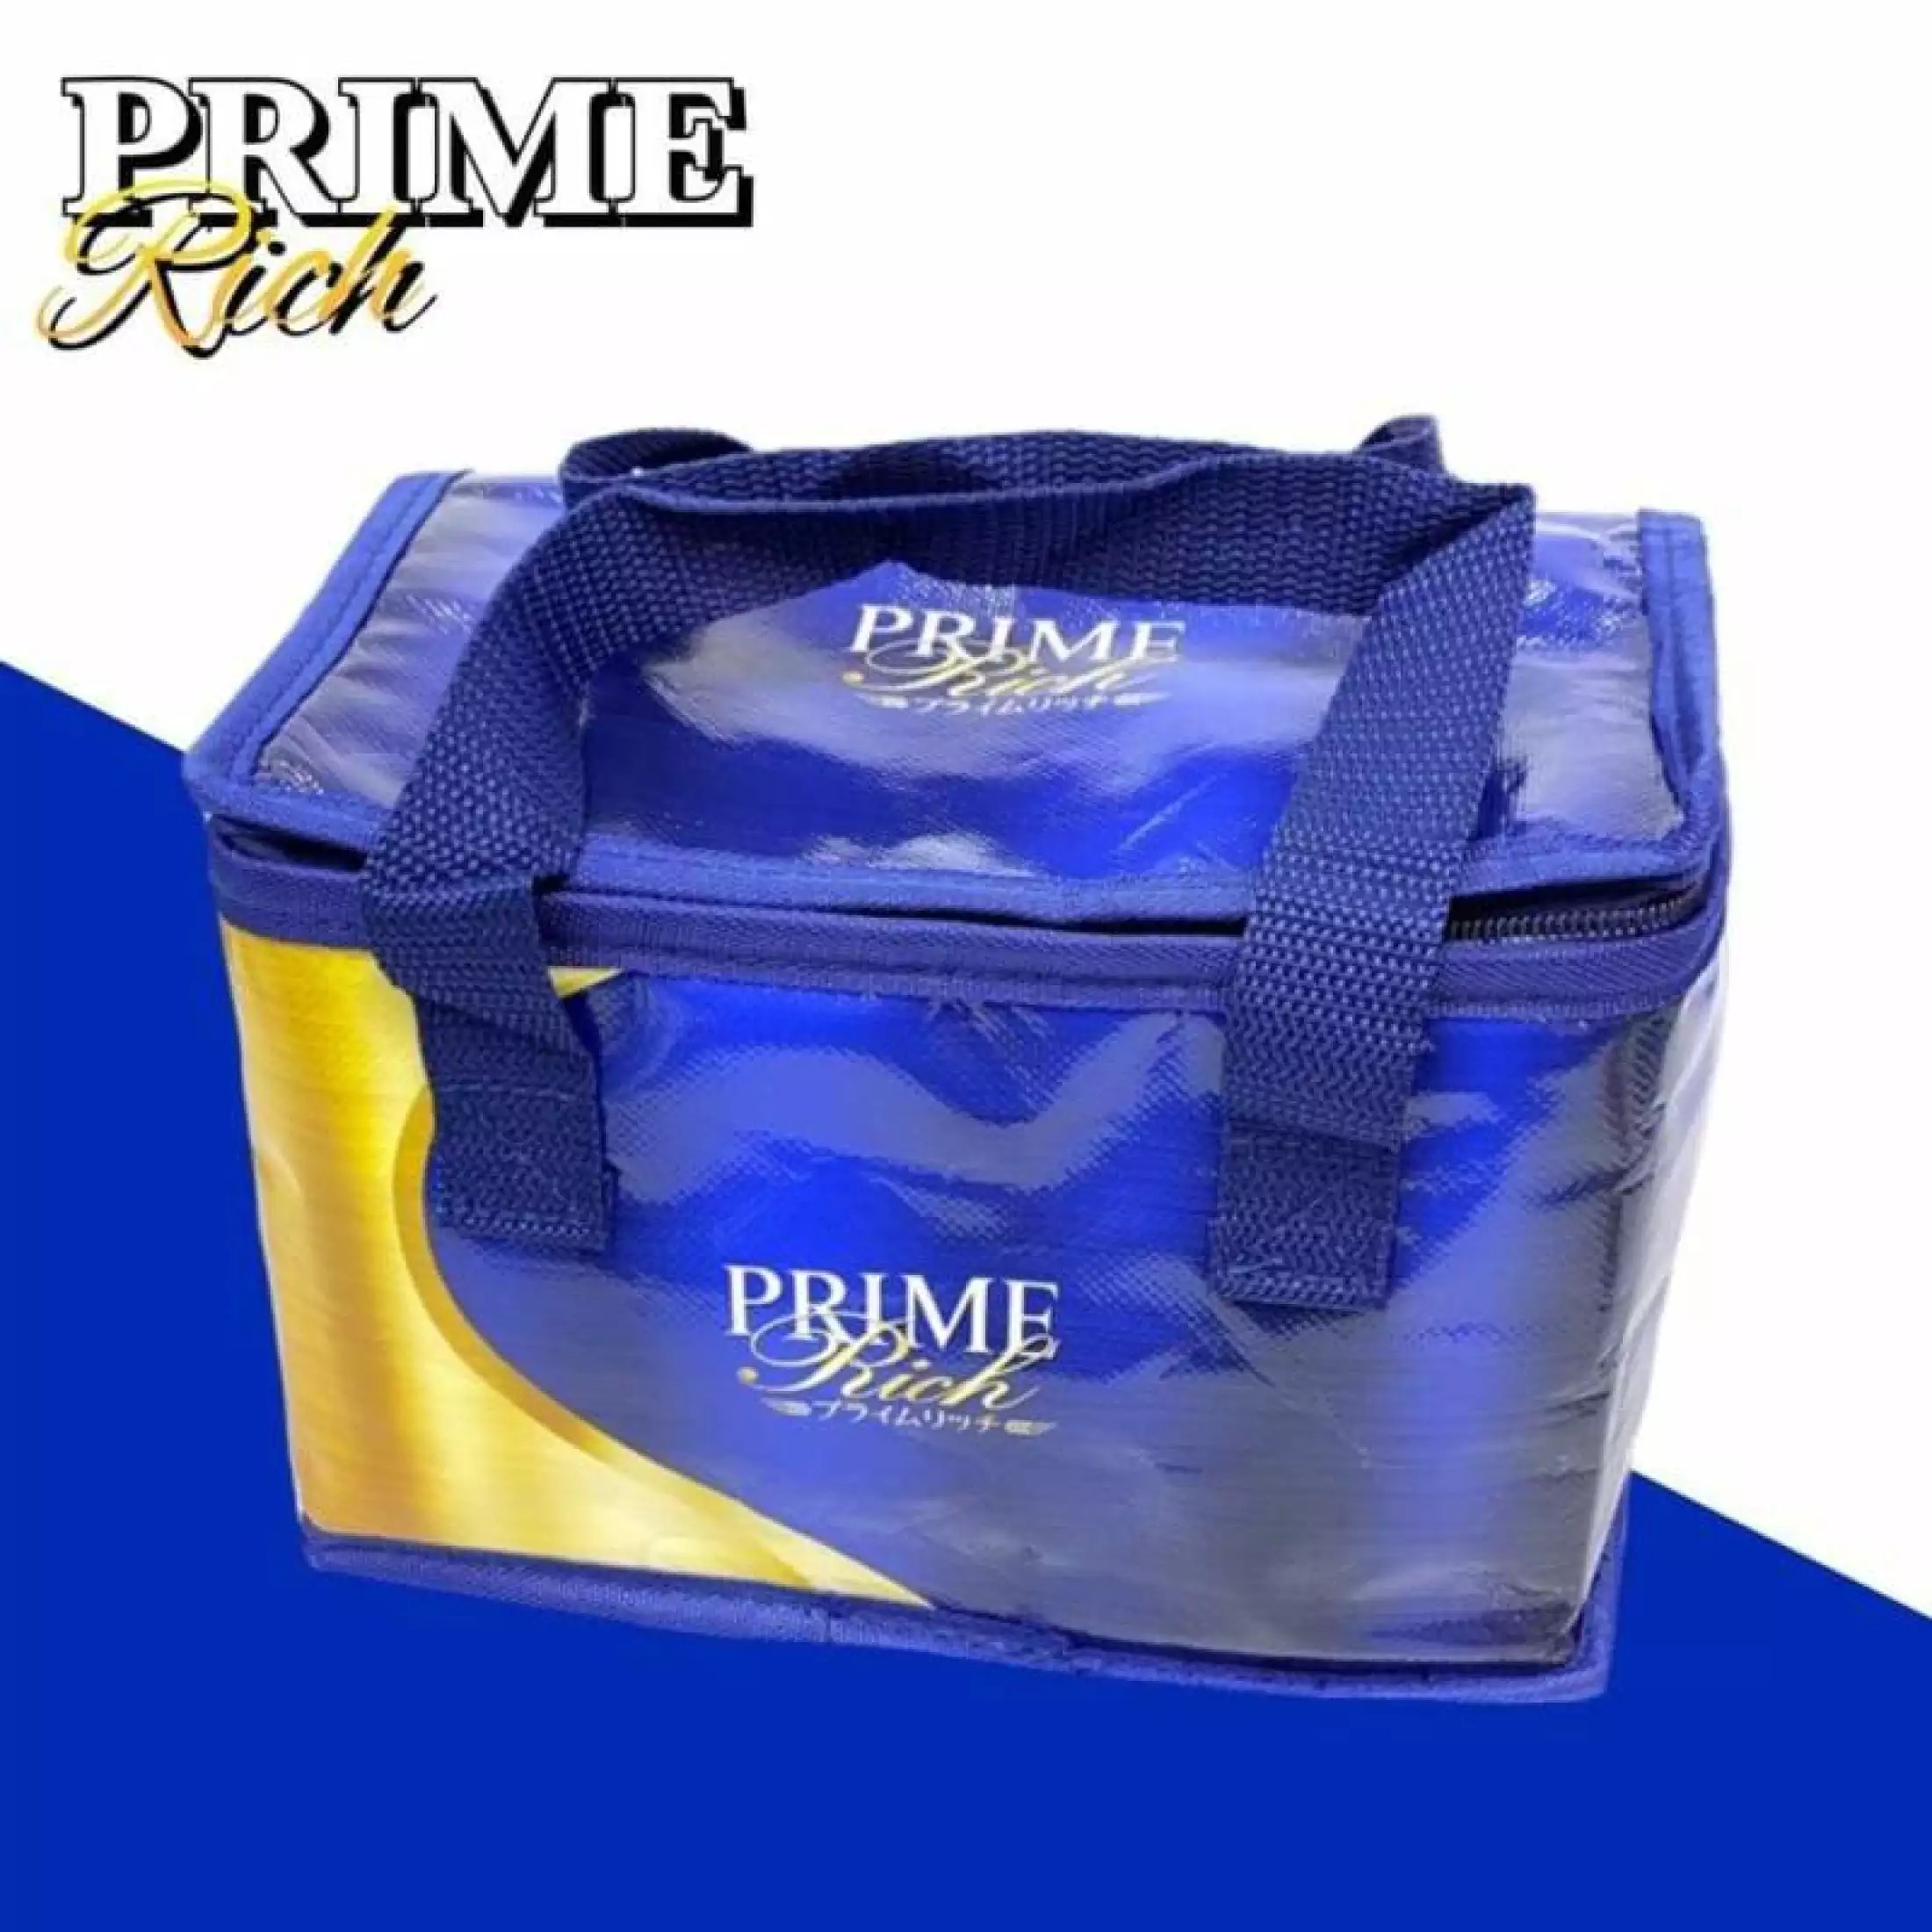 PK.Minimal Thermo bag Prime กระเป๋าเก็บอุณหภูมิหูหิ้วคู่ สามารถเก็บอุหภูมิได้ทั้ง ความร้อนและความเย็น ช่วยในการรักษาอุหภูมิให้นานยิ่งขึ้น